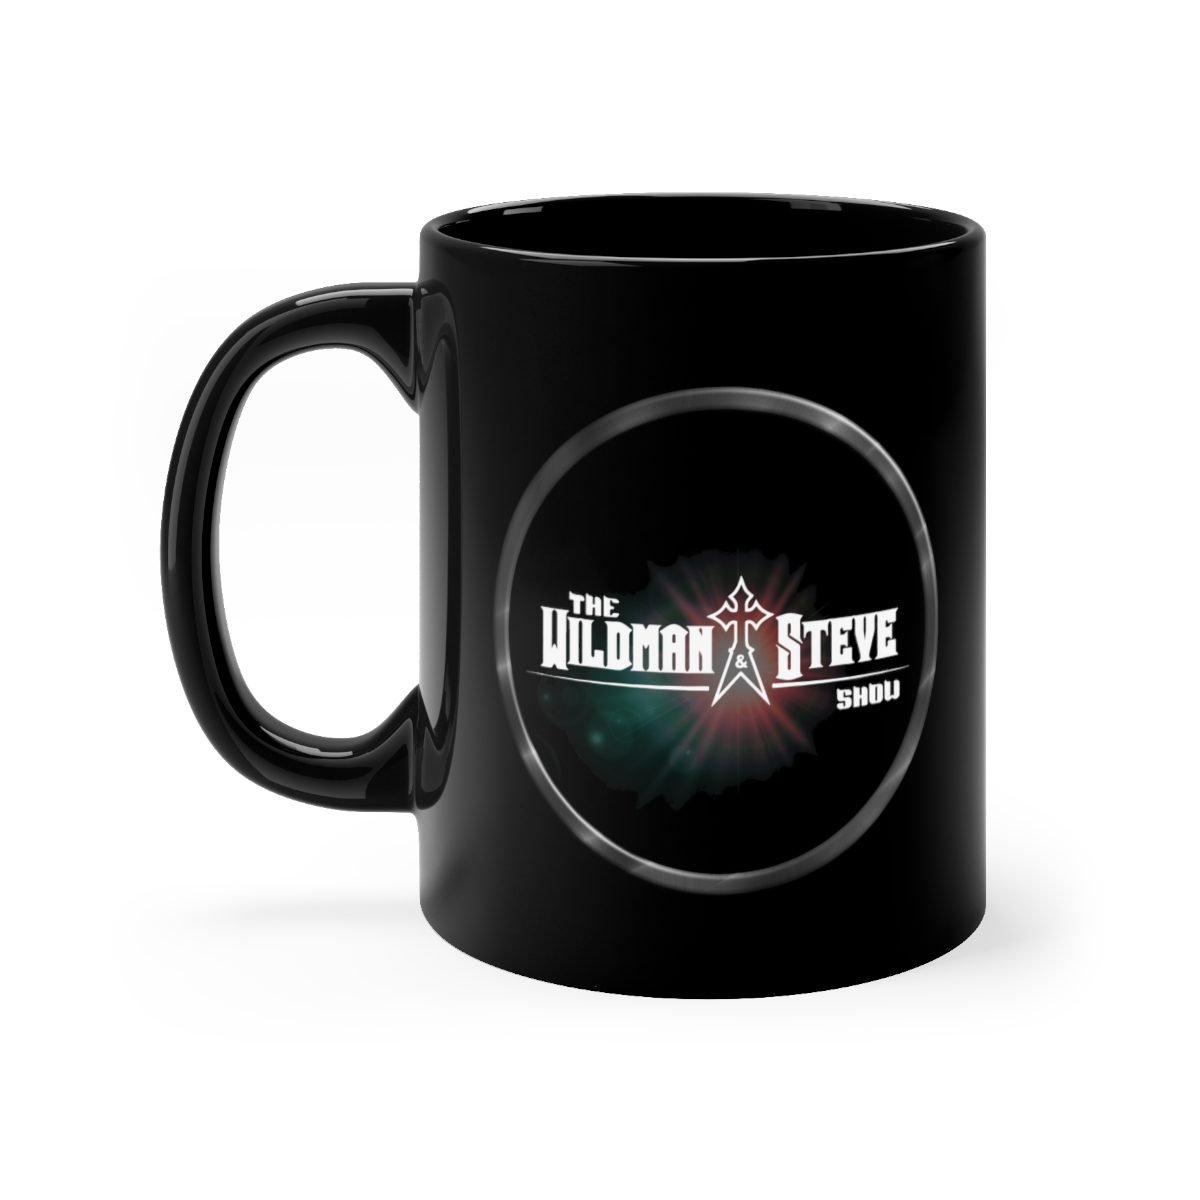 The Wildman and Steve Show – Red Glare 11oz Black mug